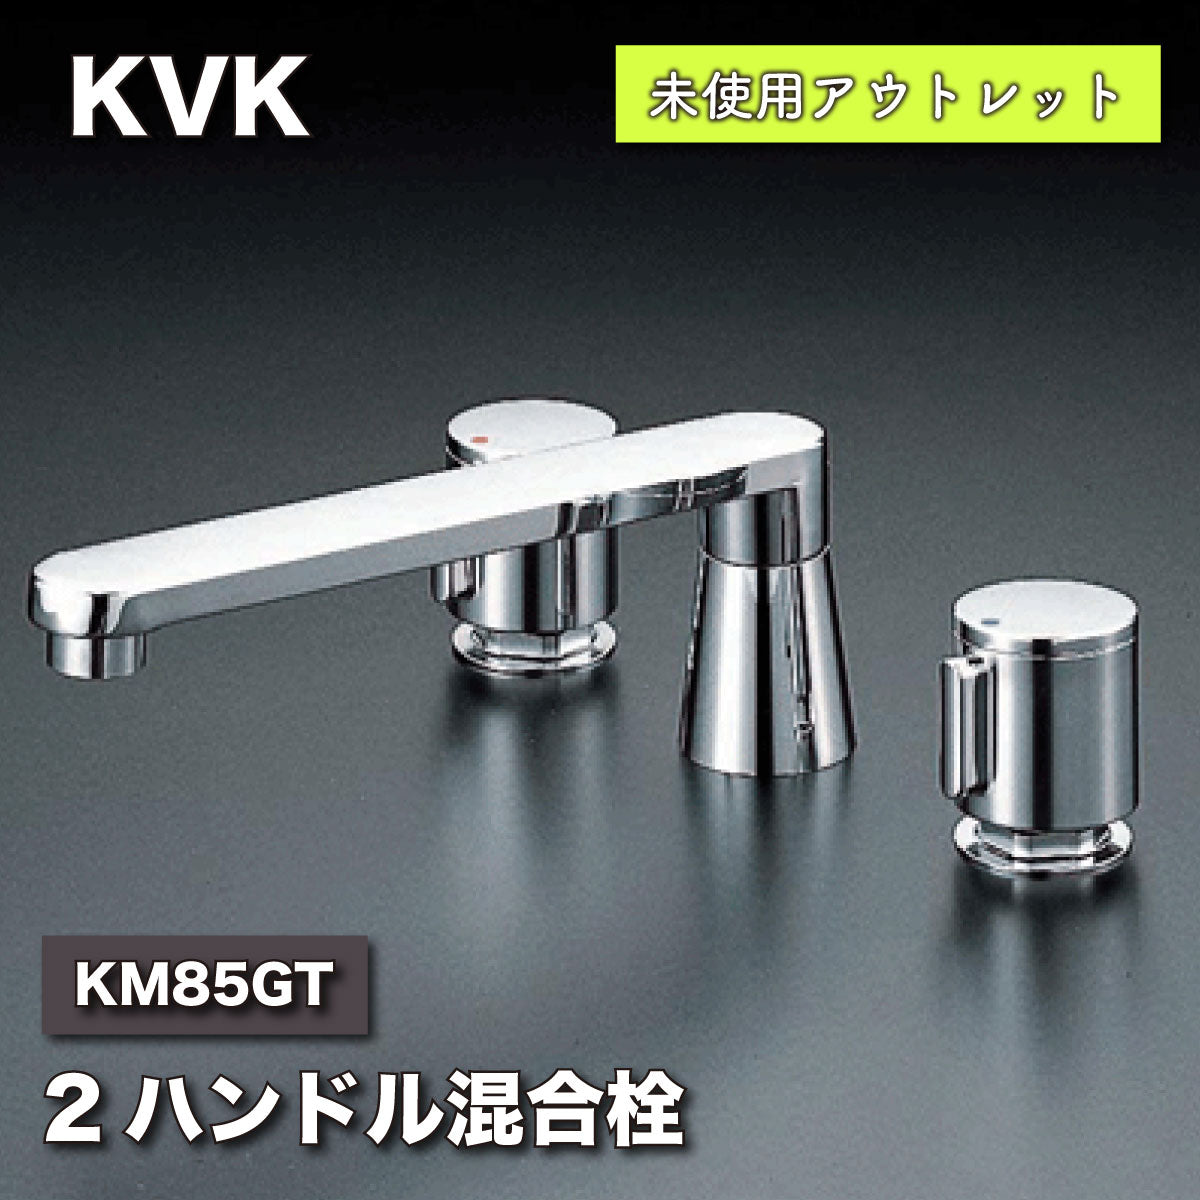 【未使用品】【開封品】【中古A】 KVK バス用埋込2ハンドル混合水栓 KM85GT